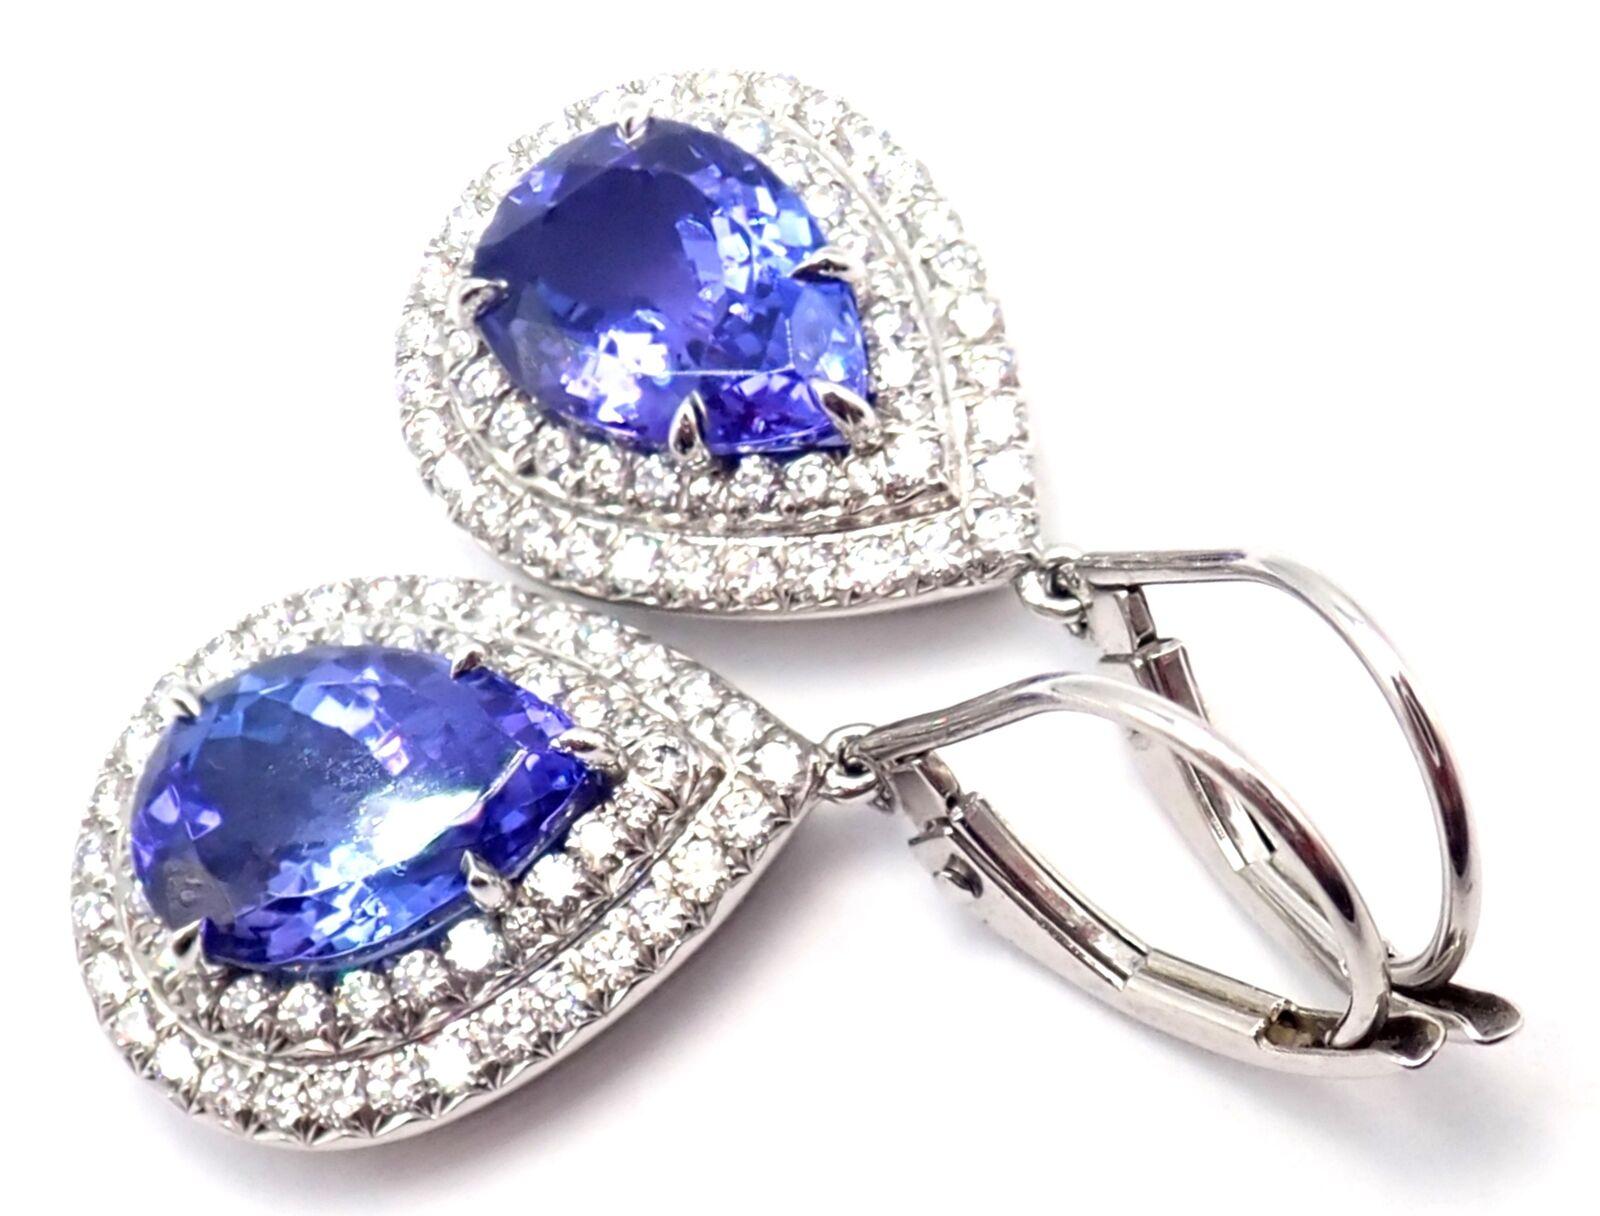 Boucles d'oreilles Soleste en Platine Diamant Tanzanite par Tiffany & Co. 
Avec des diamants ronds de taille brillante d'un poids total d'environ 51ct.
2 tanzanites en forme de poire d'un poids total d'environ 2,50ct
Ces boucles d'oreilles sont